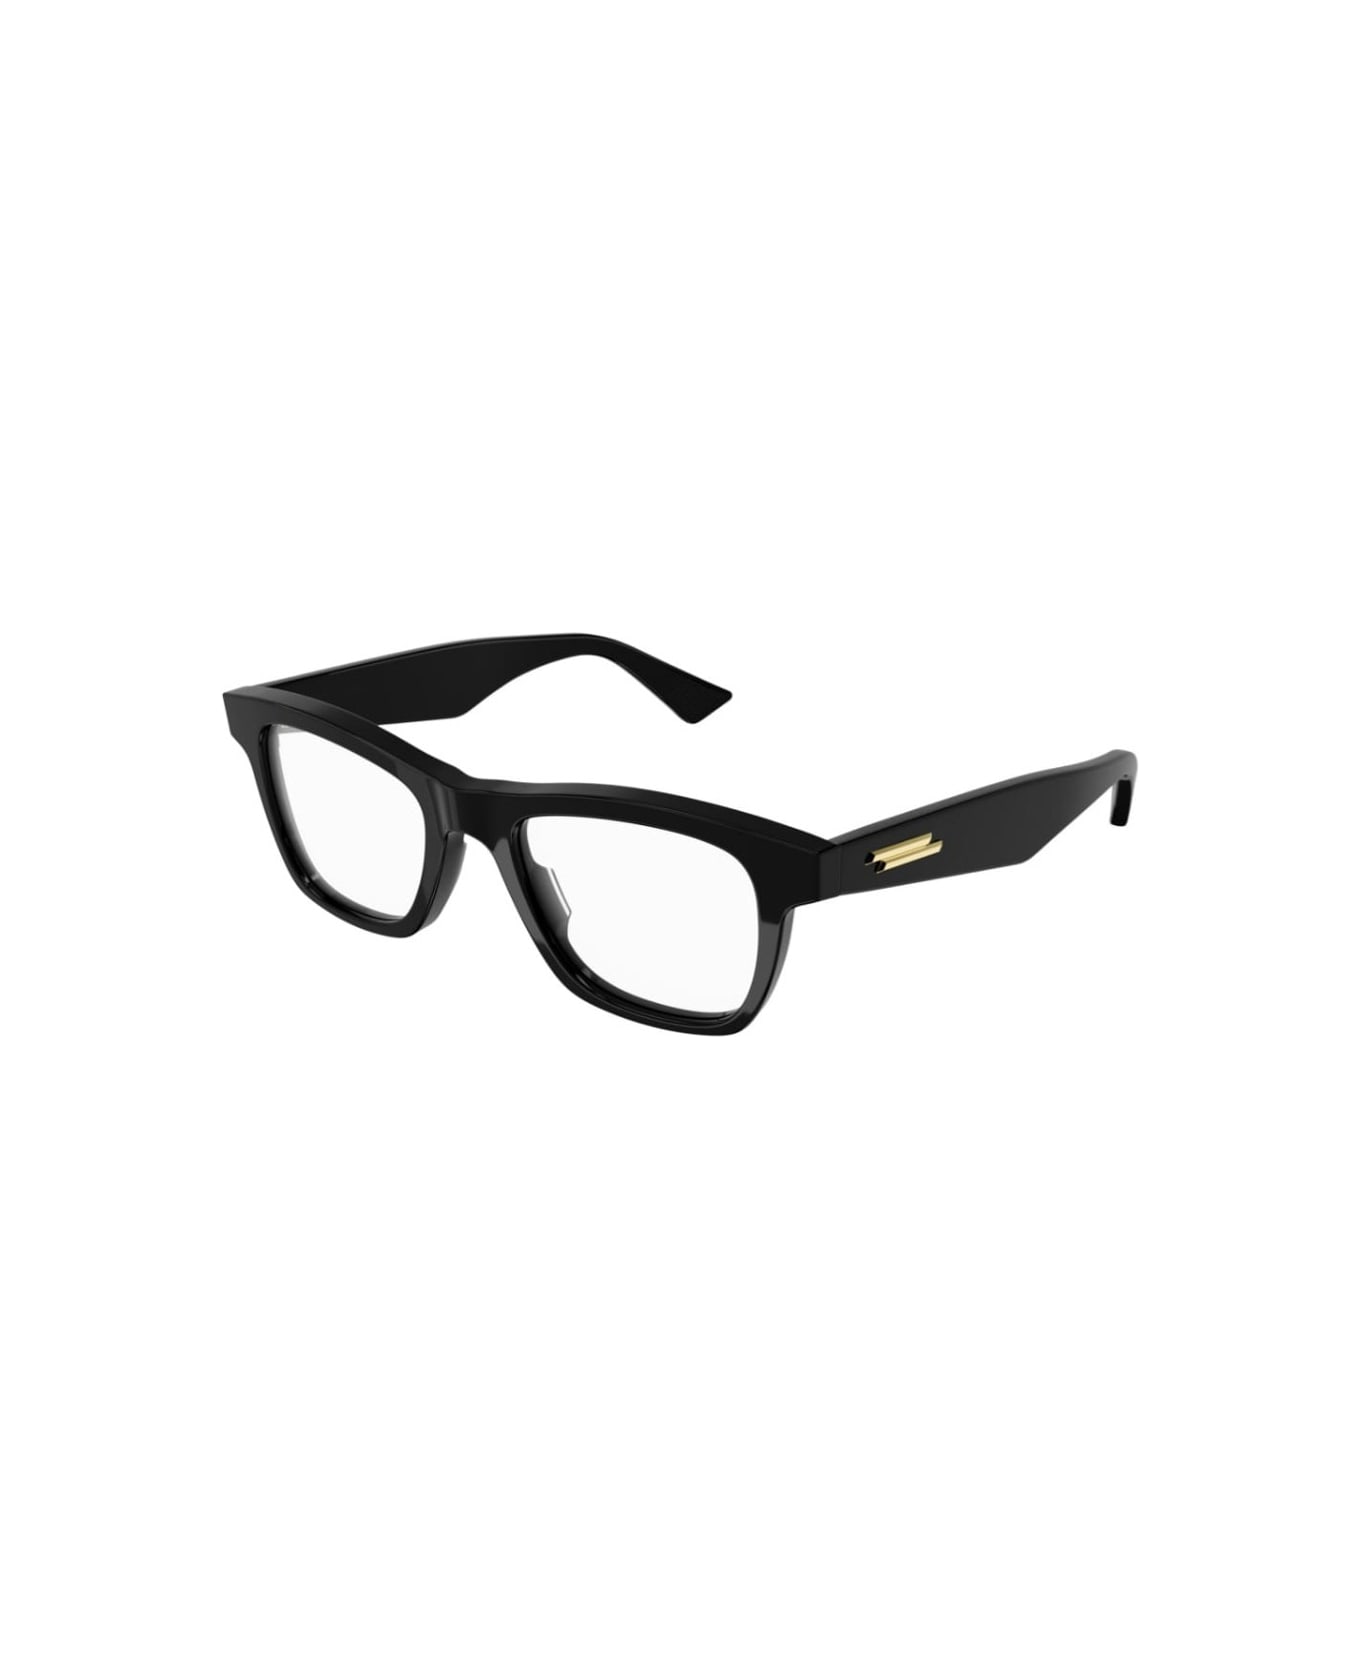 Bottega Veneta Eyewear BV1120o Glasses - Nero